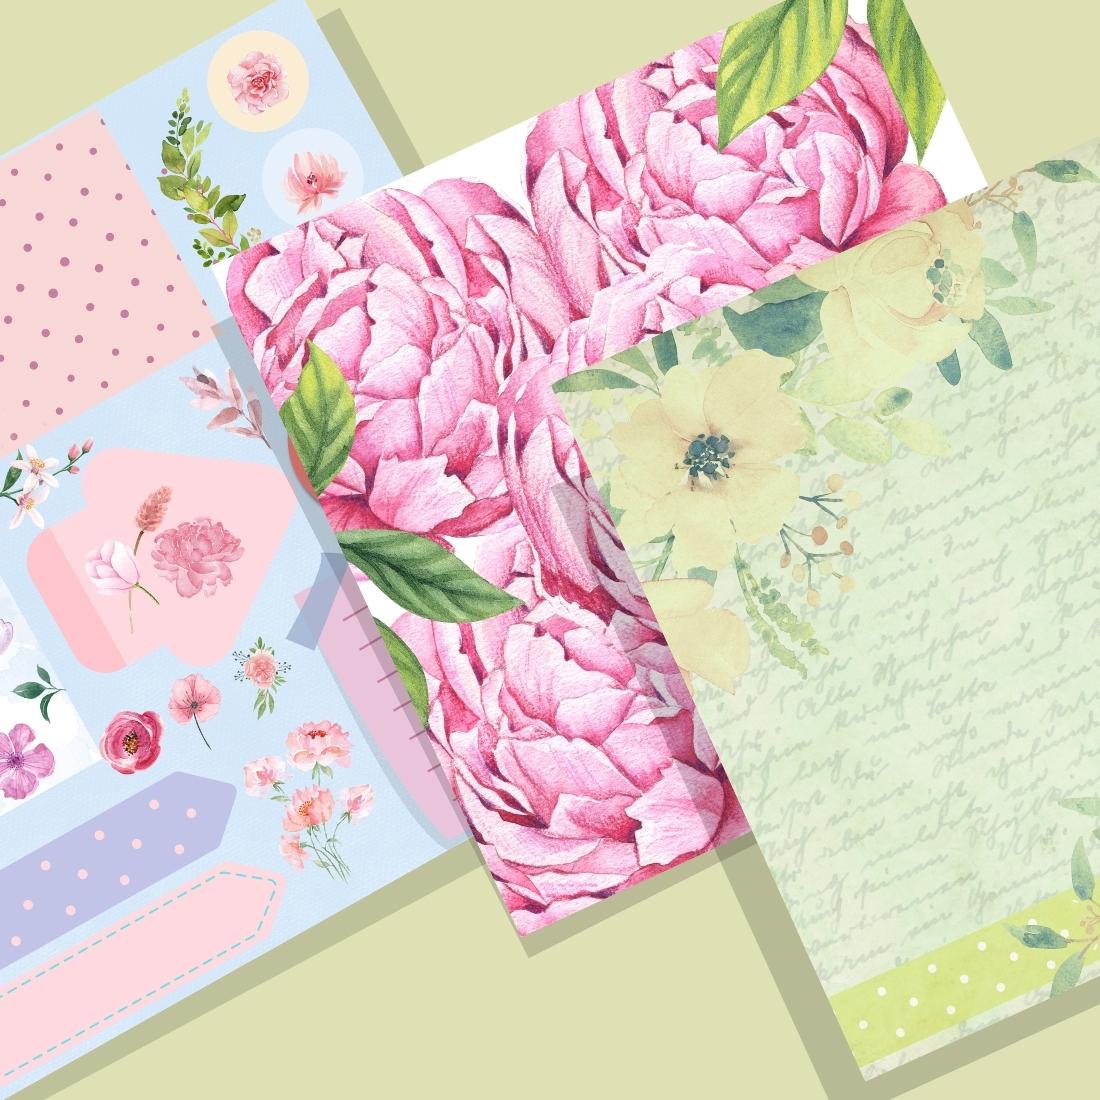 10 Lovely Floral Digital Paper Pack.